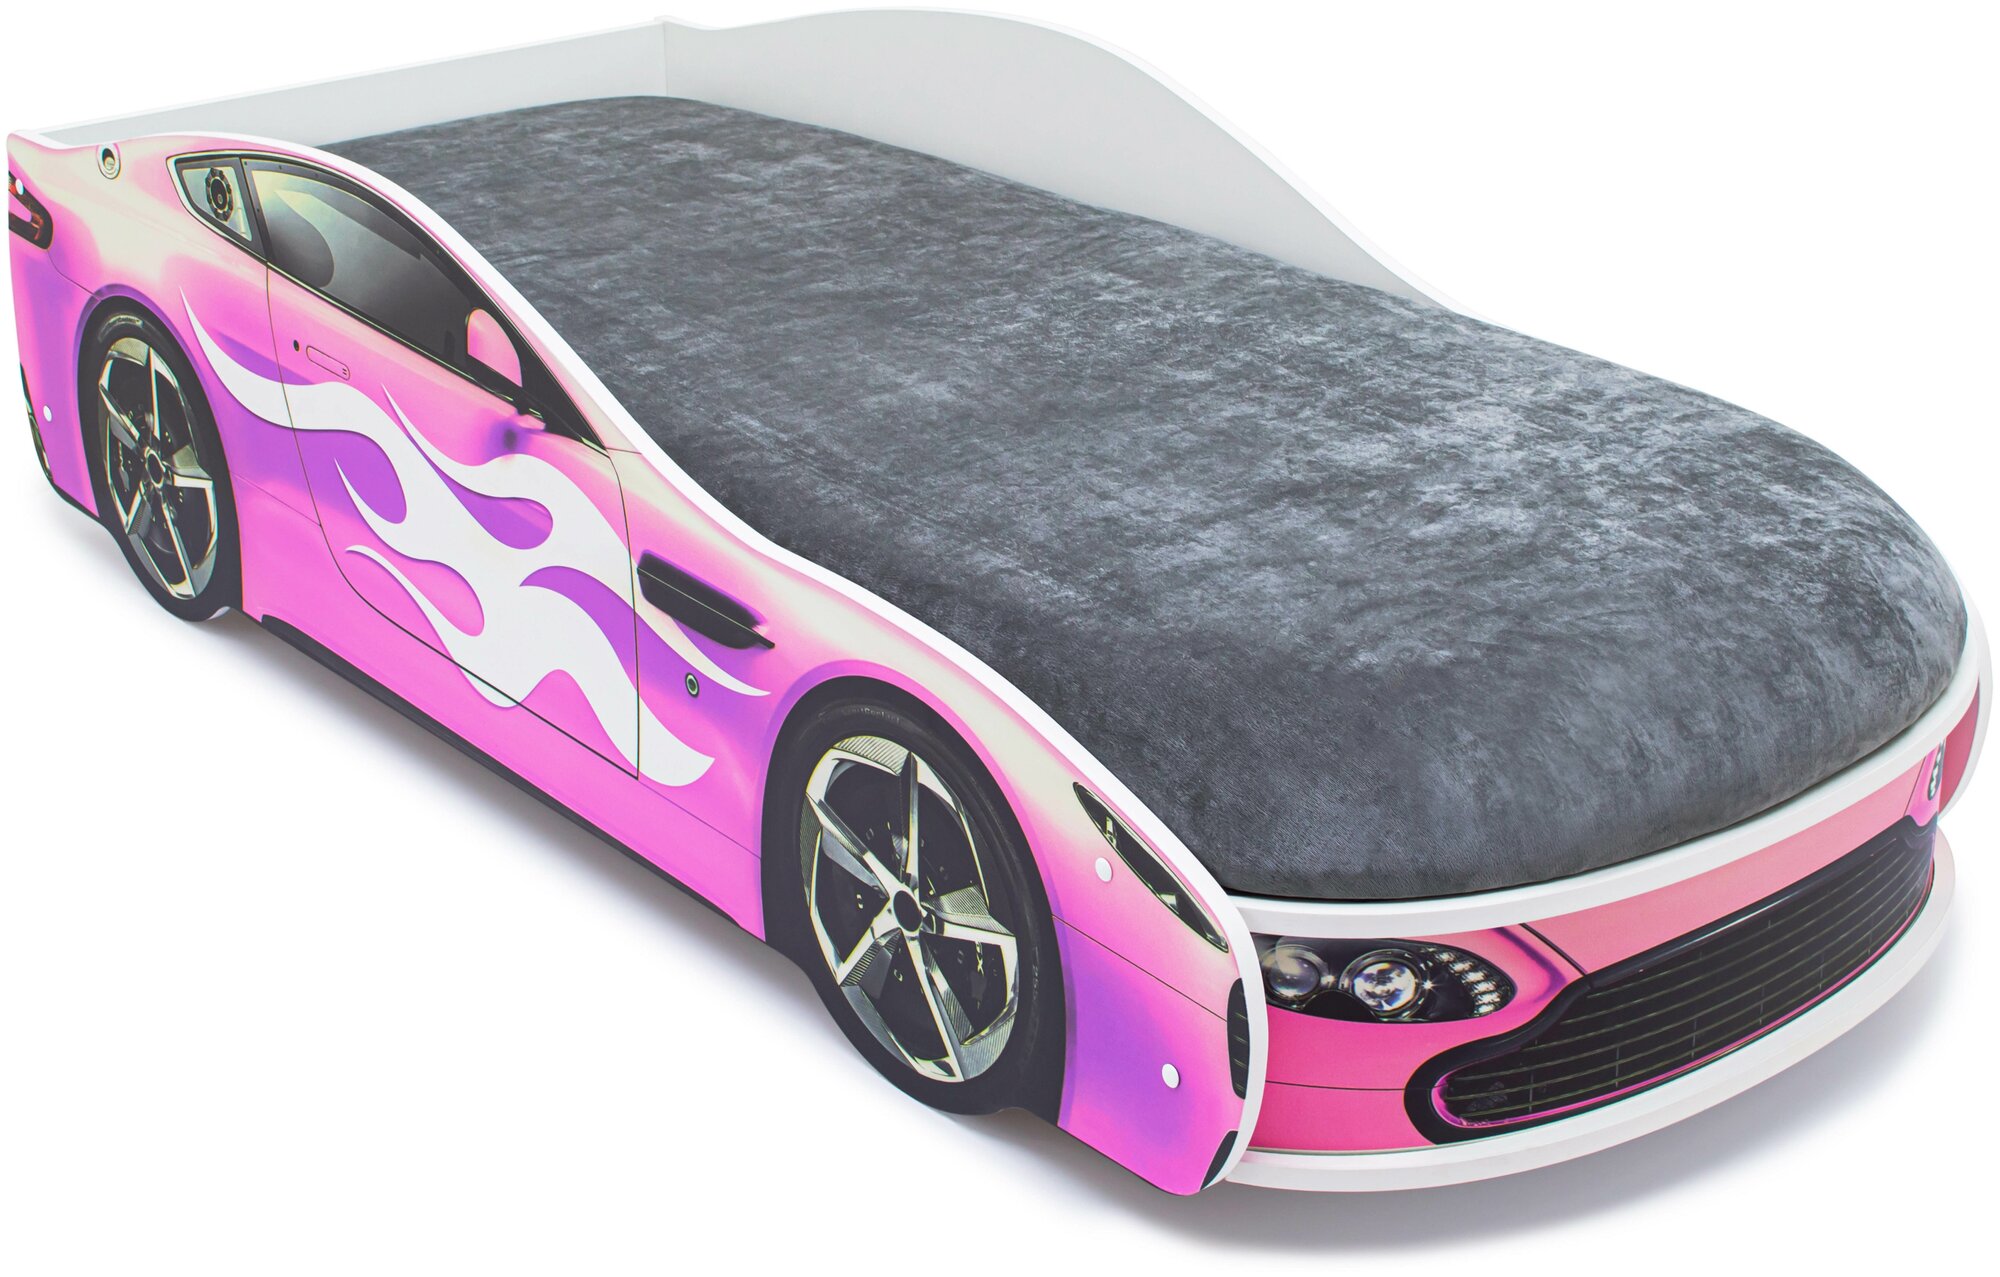 Кровать с матрасом Бельмарко Бондмобиль розовый